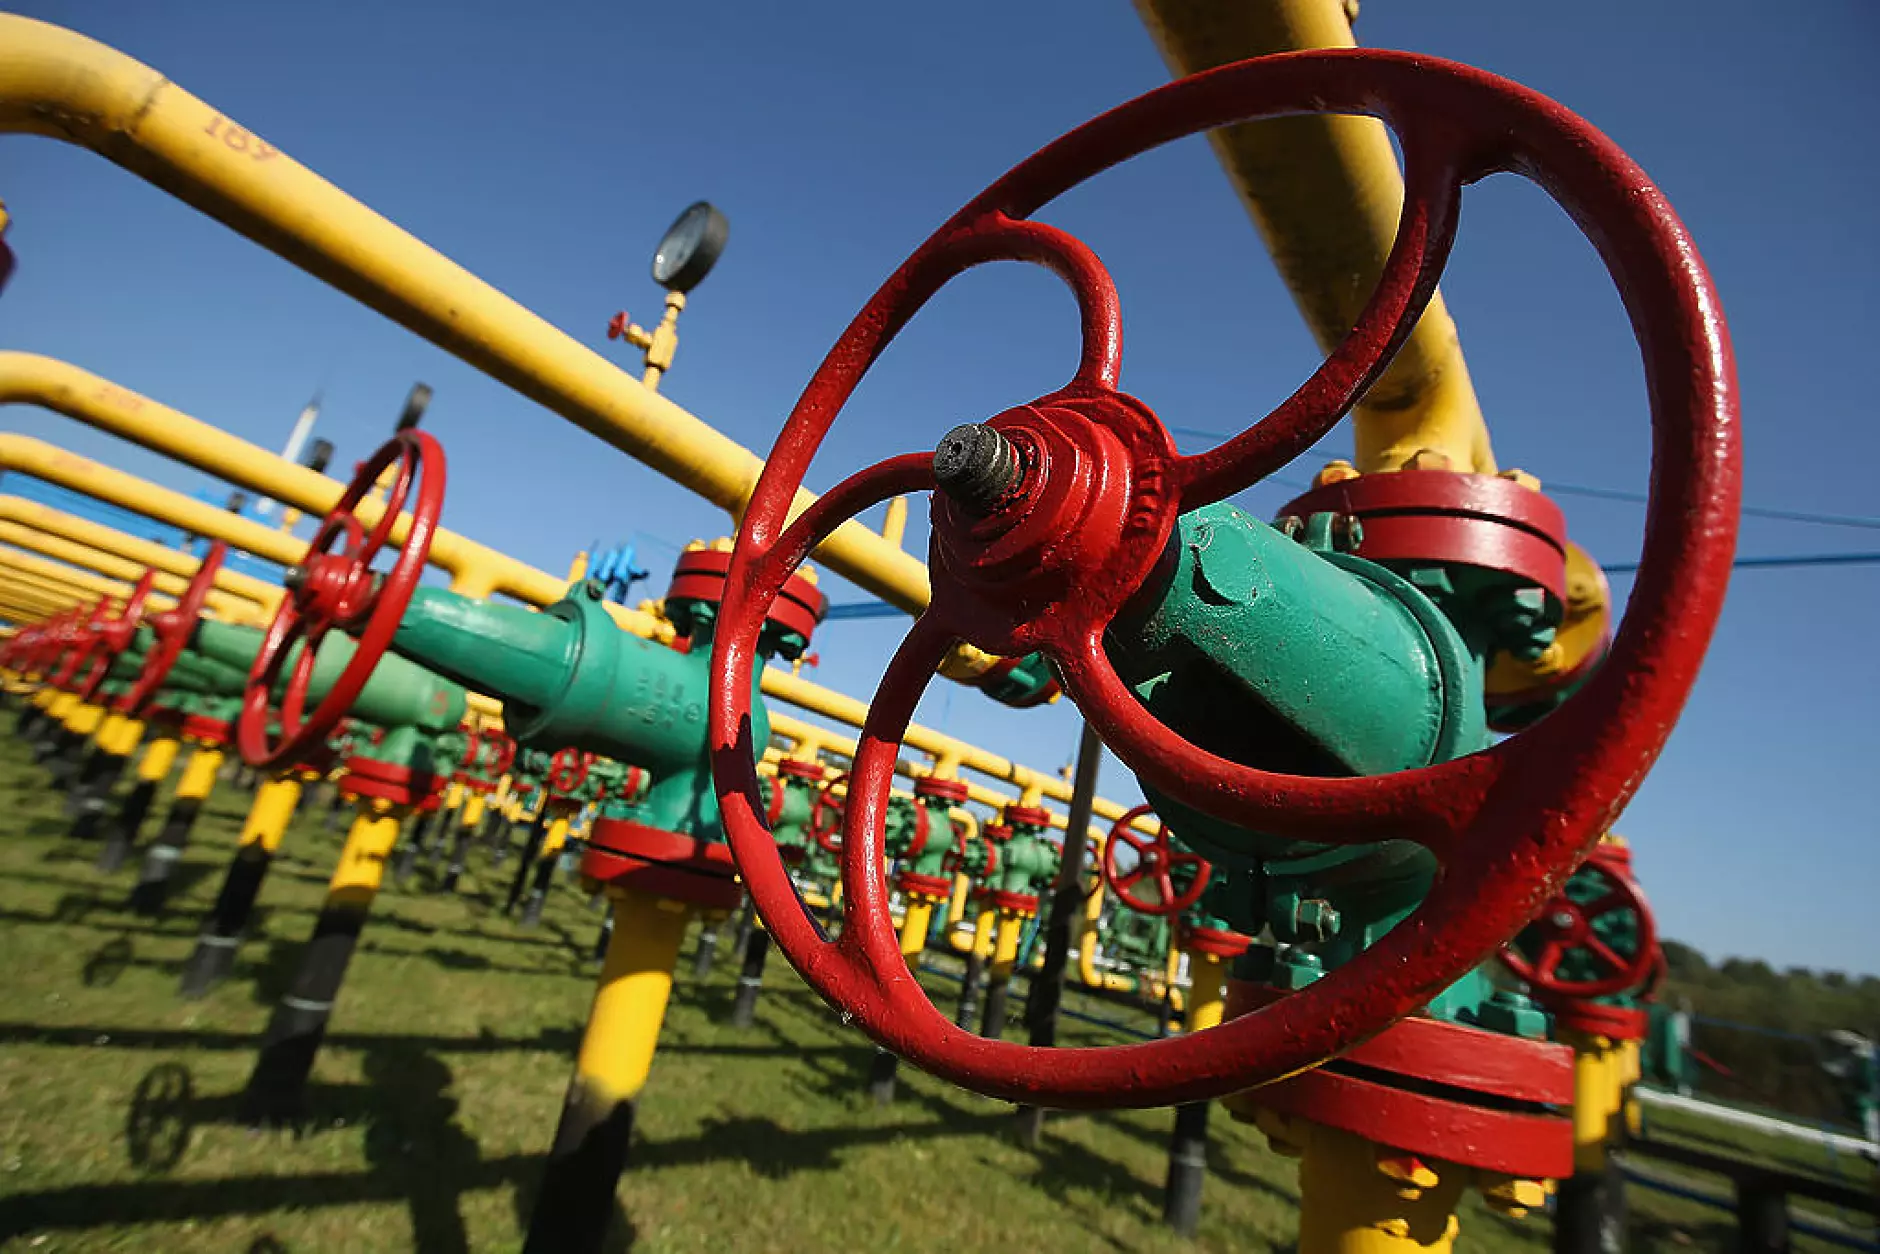 Турция ще продава природен газ на България